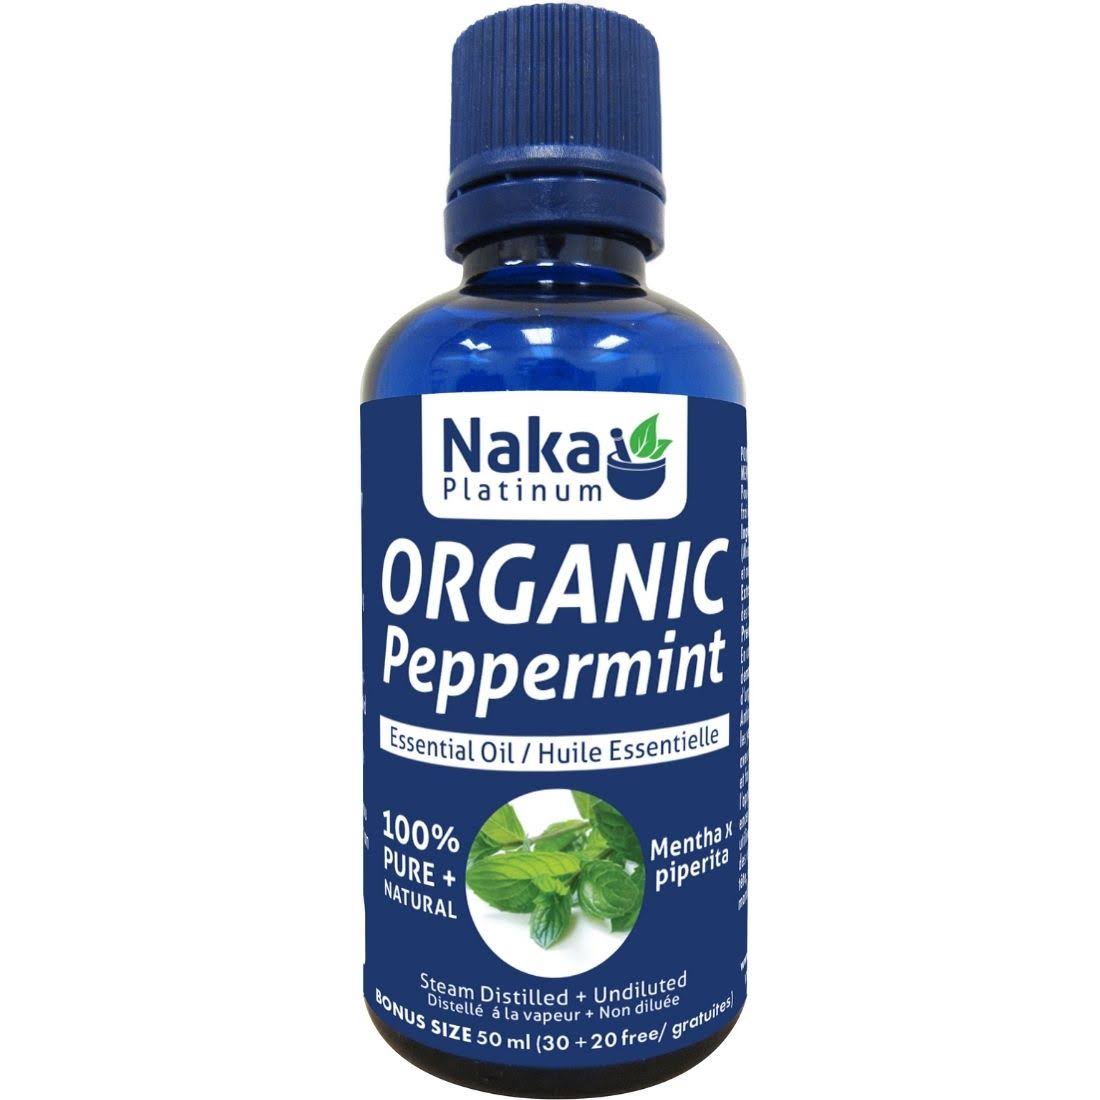 100% Pure Peppermint Essential Oil (Organic) - 50ml + Bonus Item